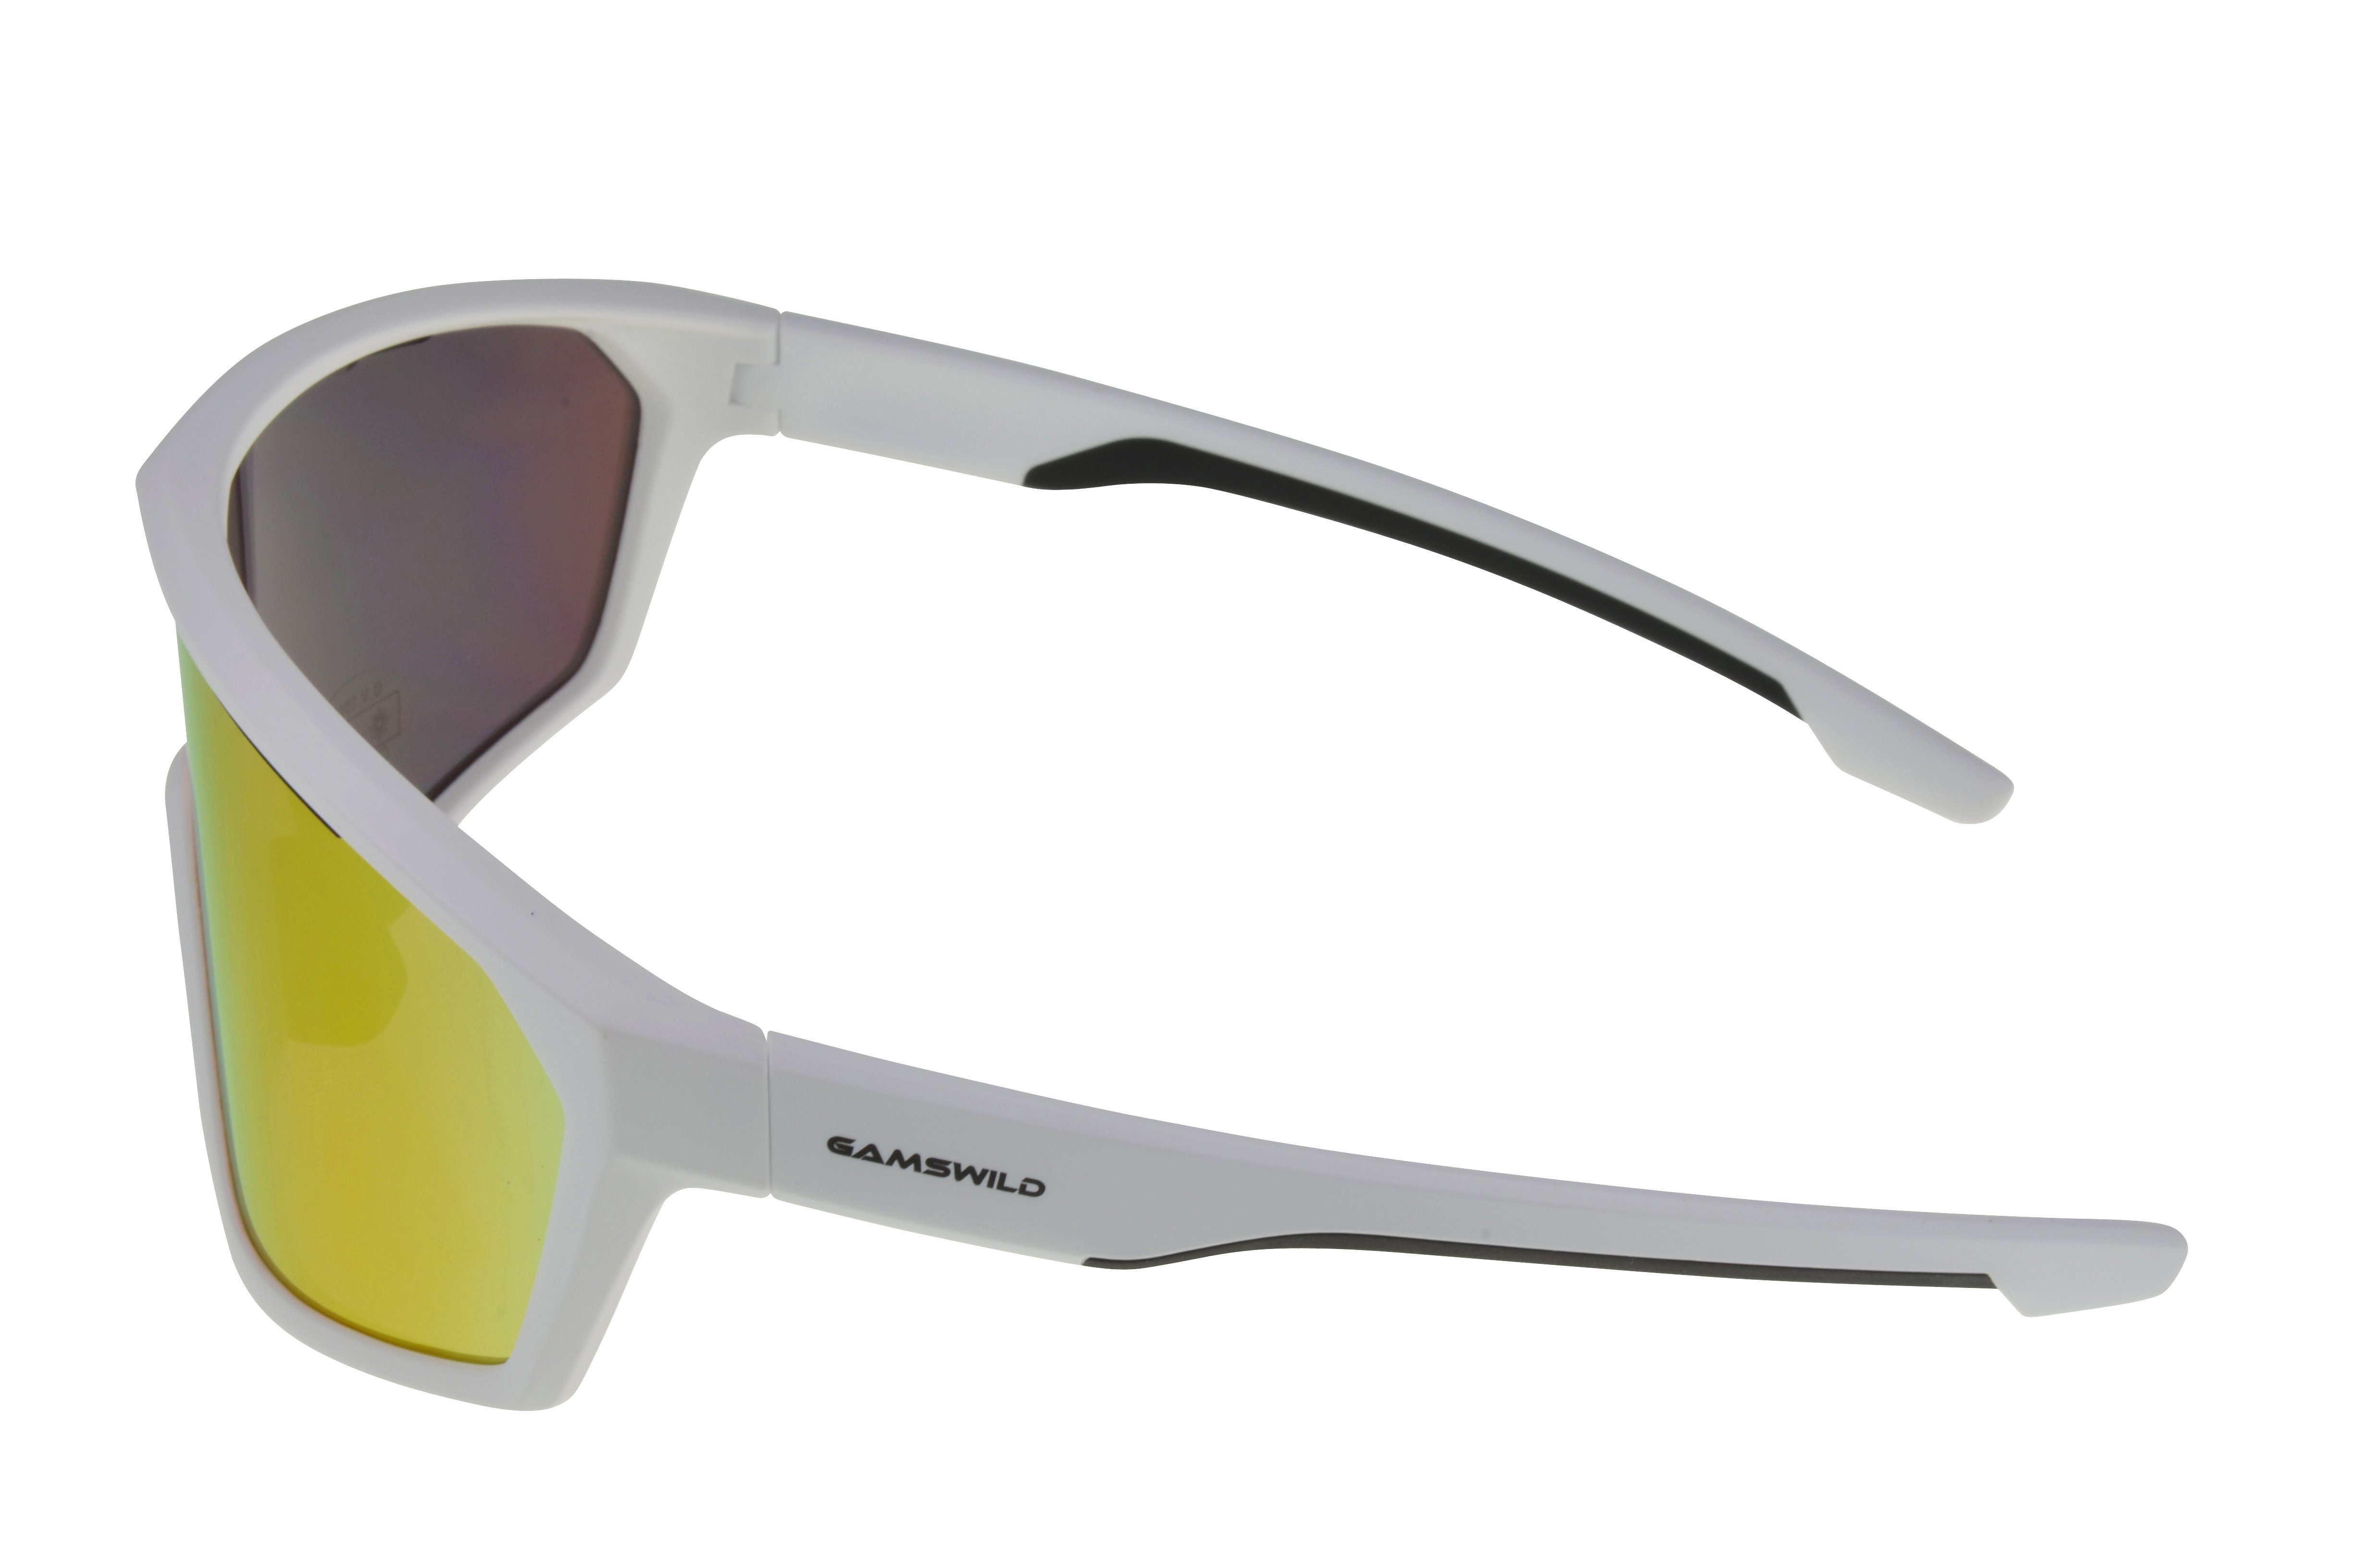 tolles Sonnenbrille Damen Design, TR90 Monoscheibensonnenbrille WS5838 Herren blau, weiß Gamswild Fahrradbrille grün, Unisex Skibrille